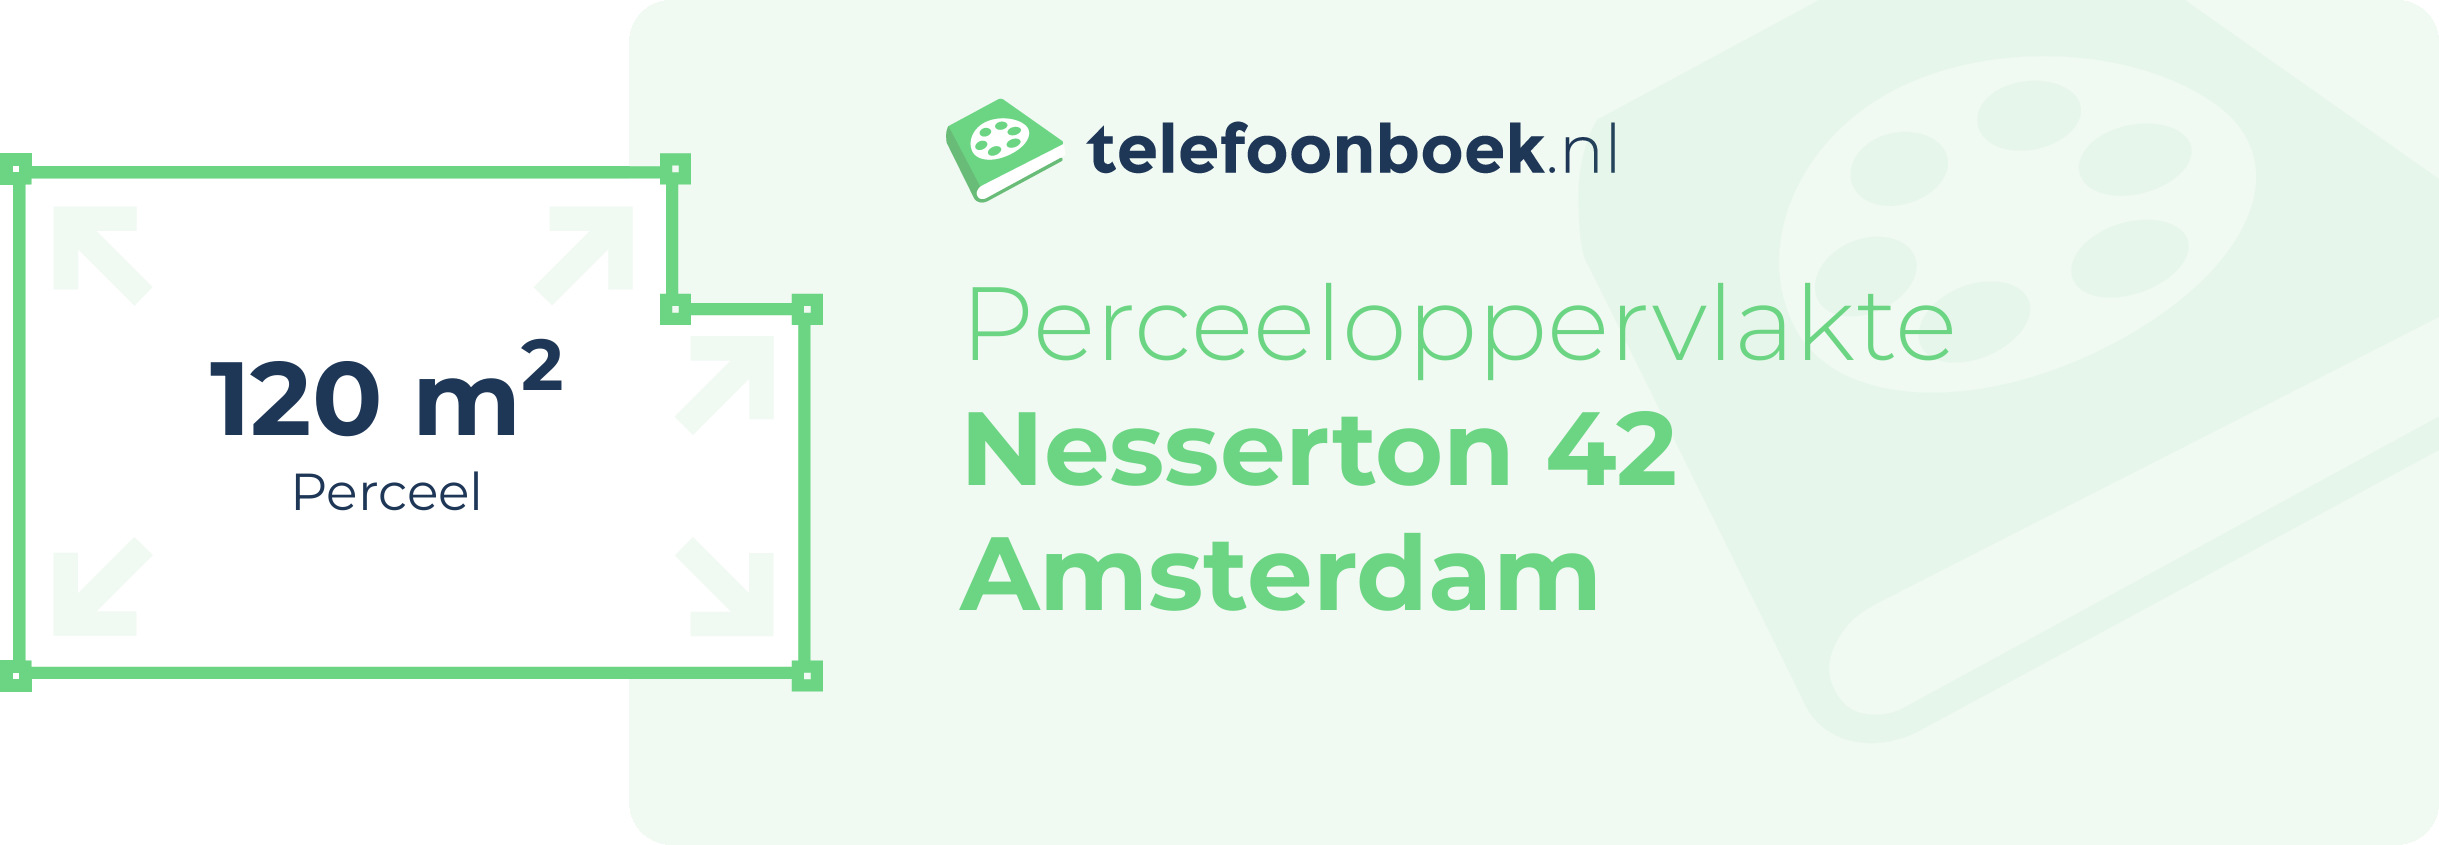 Perceeloppervlakte Nesserton 42 Amsterdam